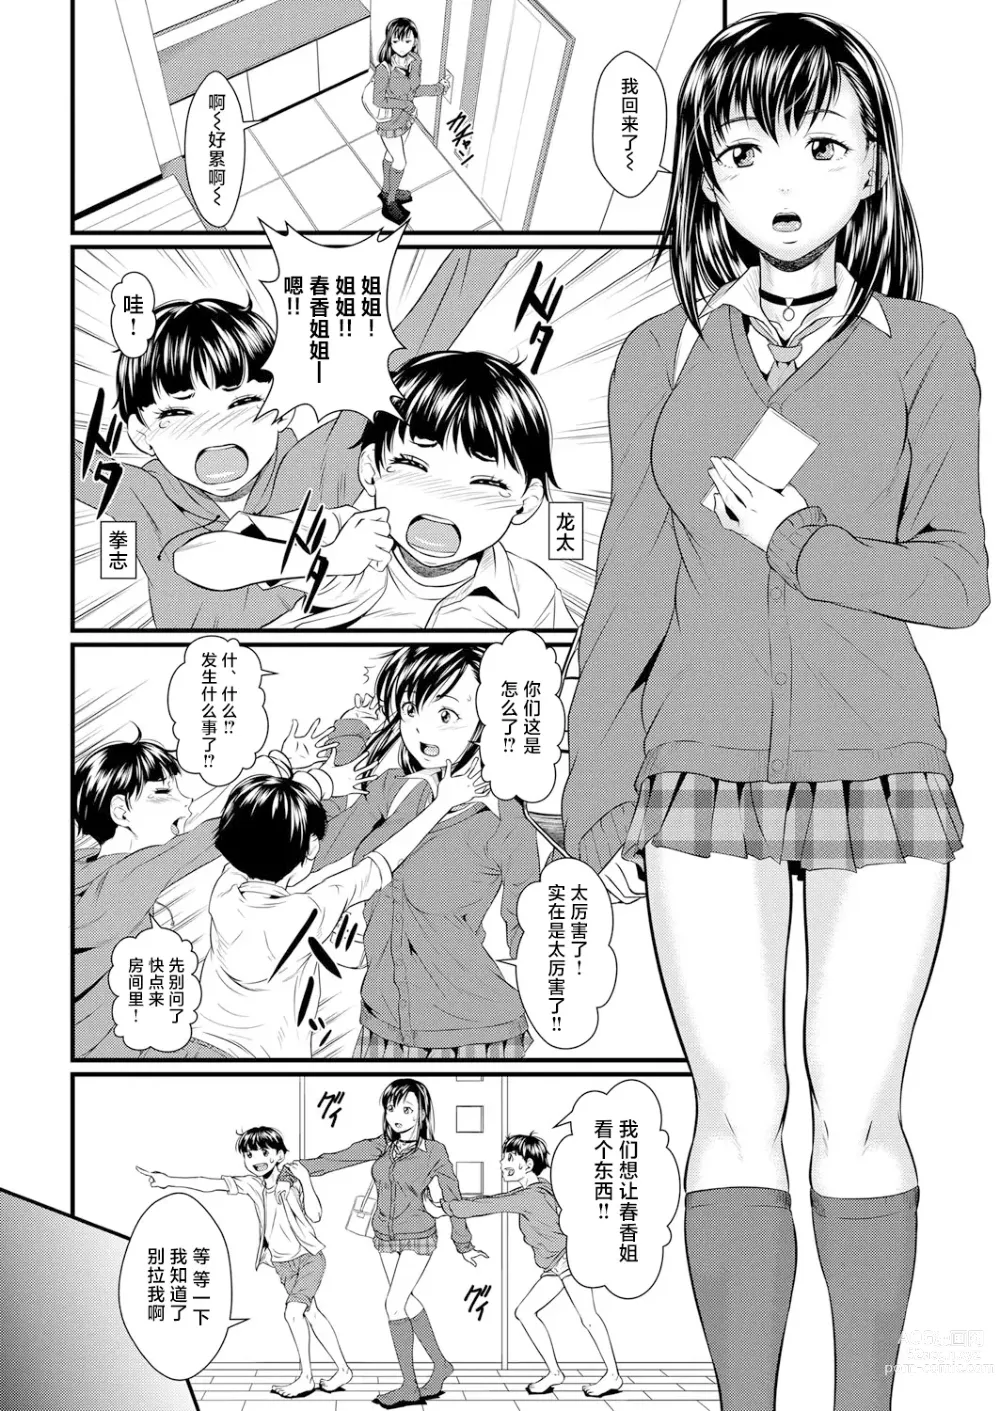 Page 2 of manga Miracle Illusion